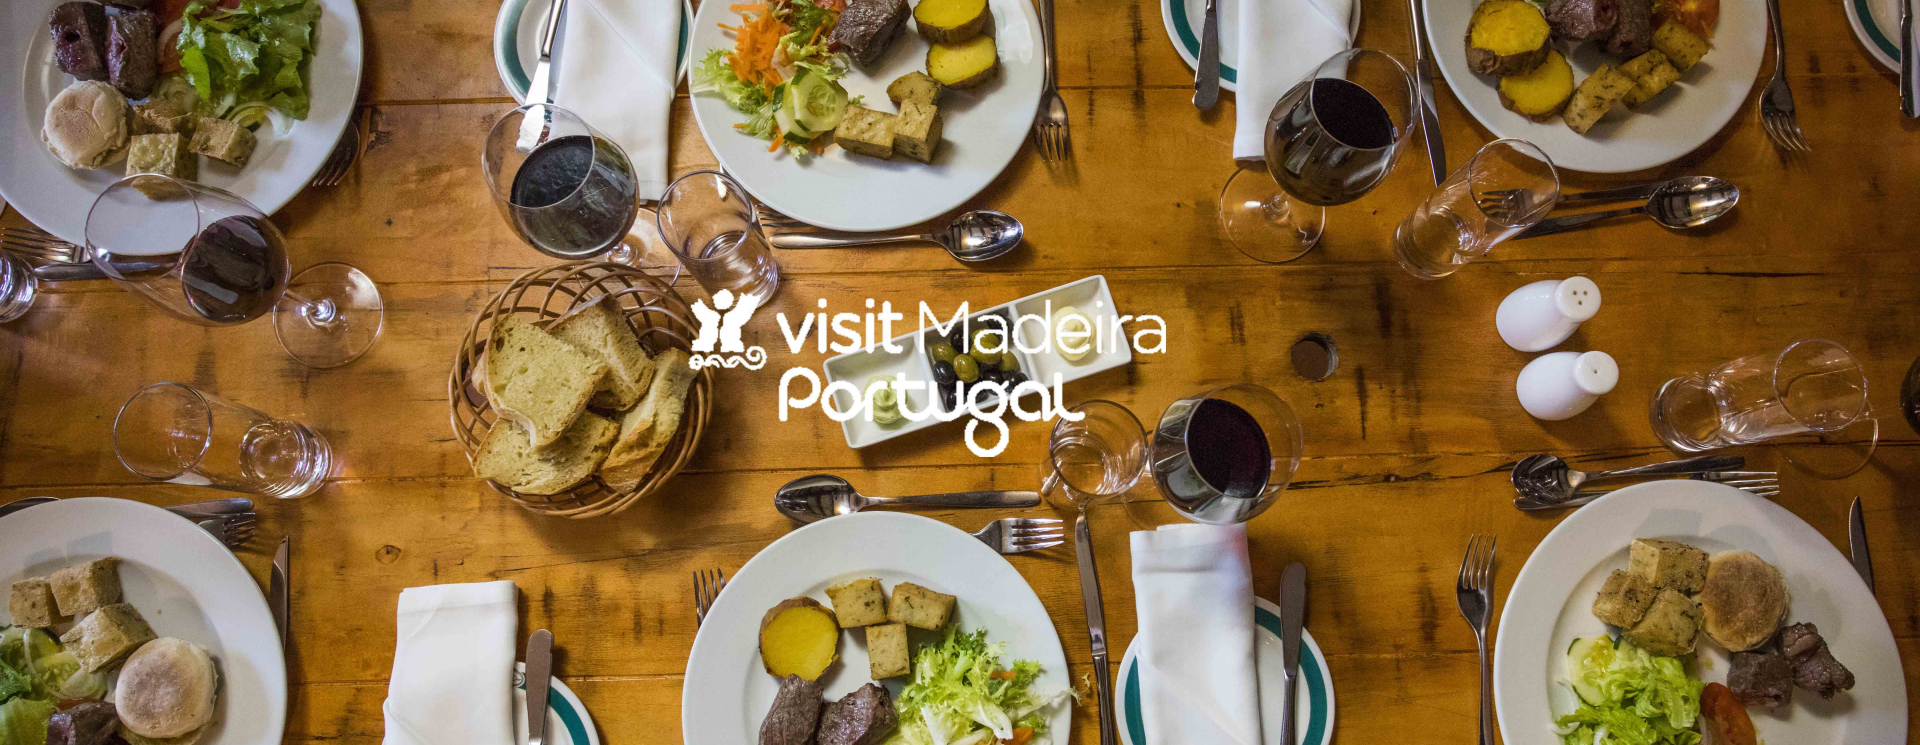 De gastronomie van Madeira